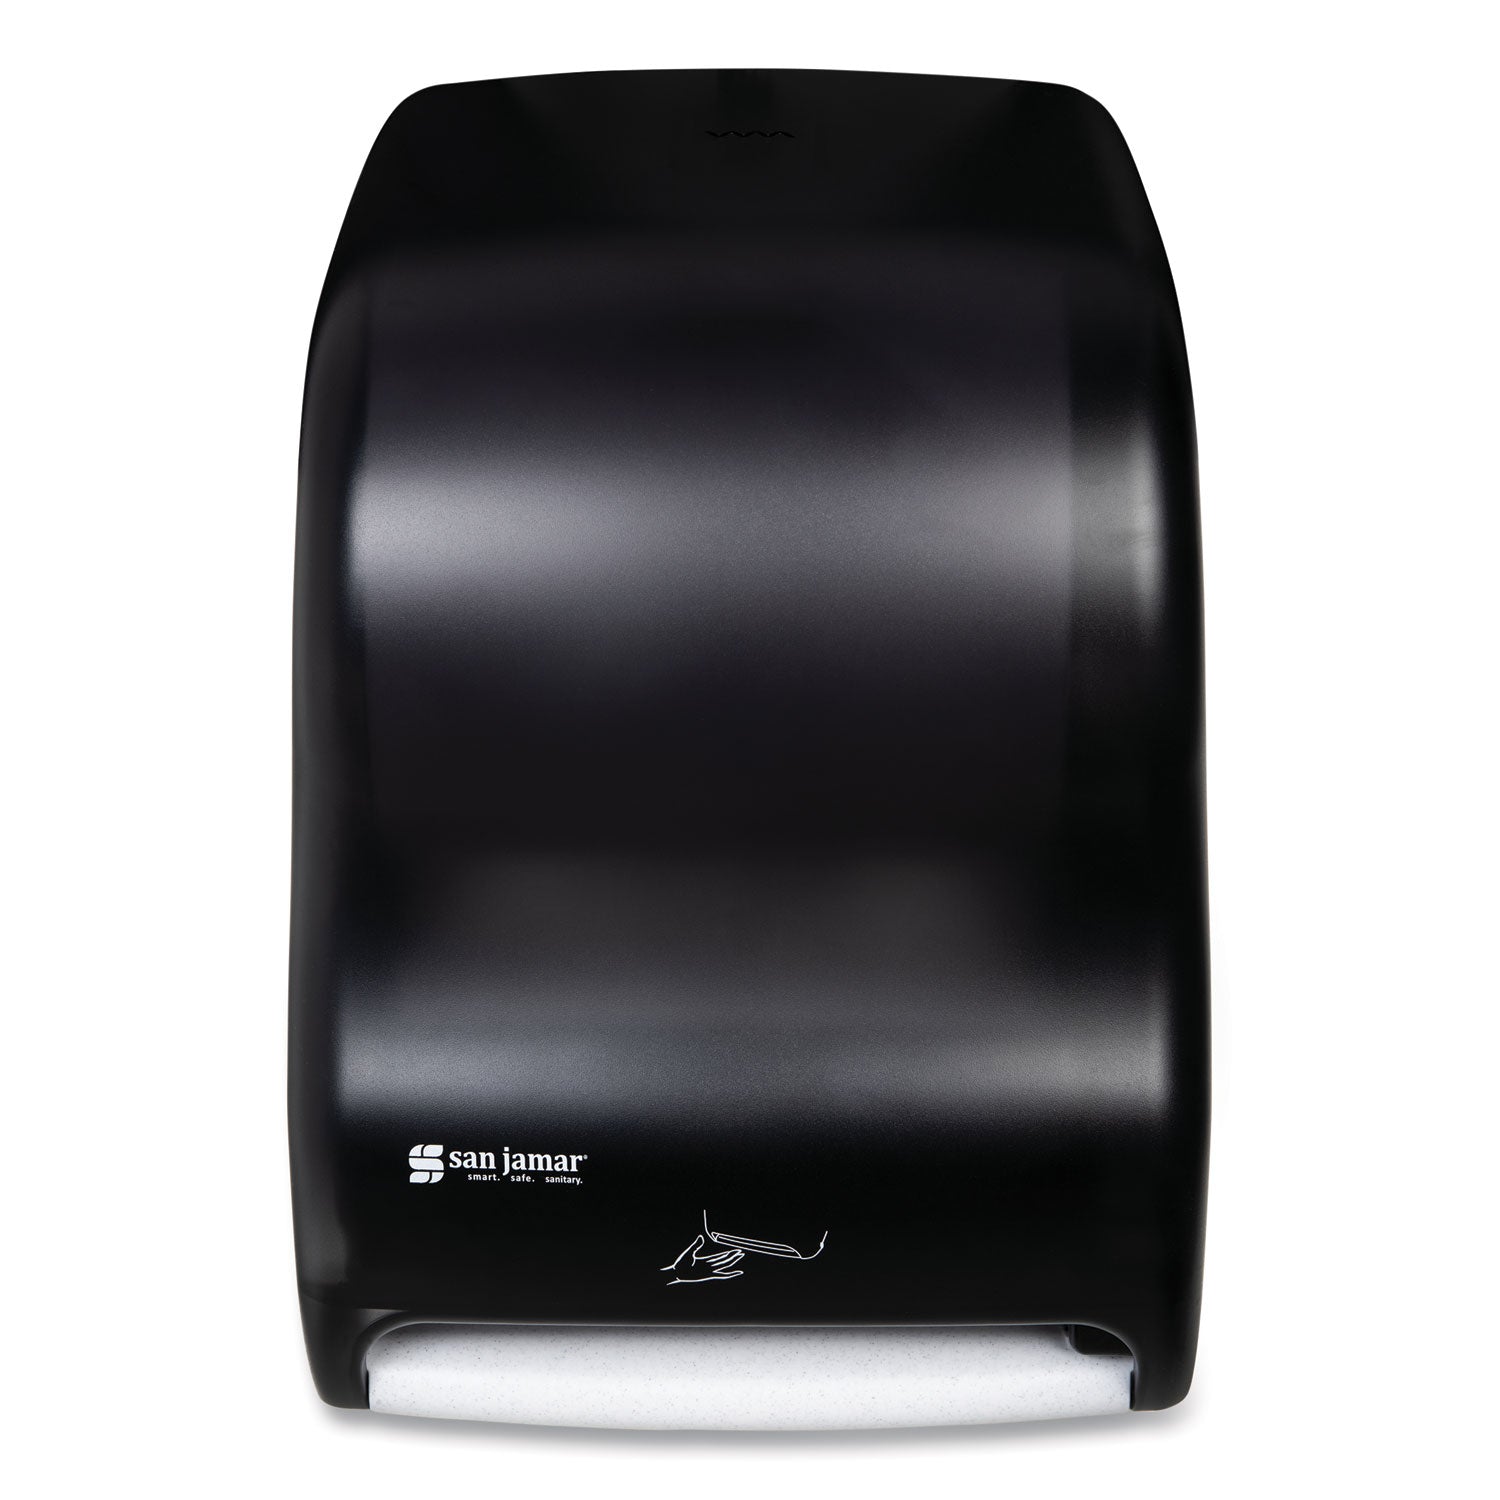 smart-system-with-iq-sensor-towel-dispenser-1175-x-9-x-155-black-pearl_sjmt1400tbk - 1